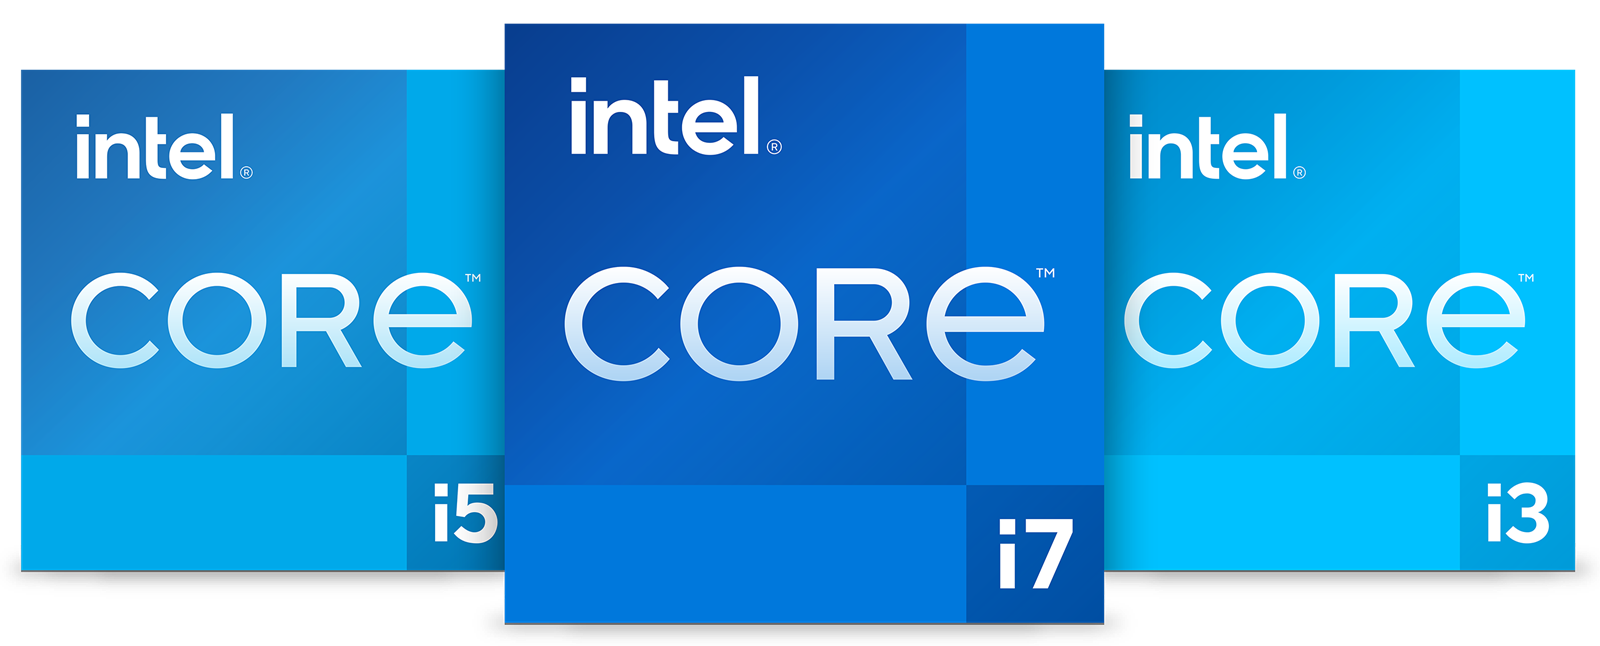 英特爾推出地表最佳輕薄筆記型電腦處理器：第 11 代 Intel&reg; Core&trade; 超過 150 款設計正在開發中，其中包含 20 款通過新 Intel&reg; Evo&trade; 平台品牌認證 @3C 達人廖阿輝